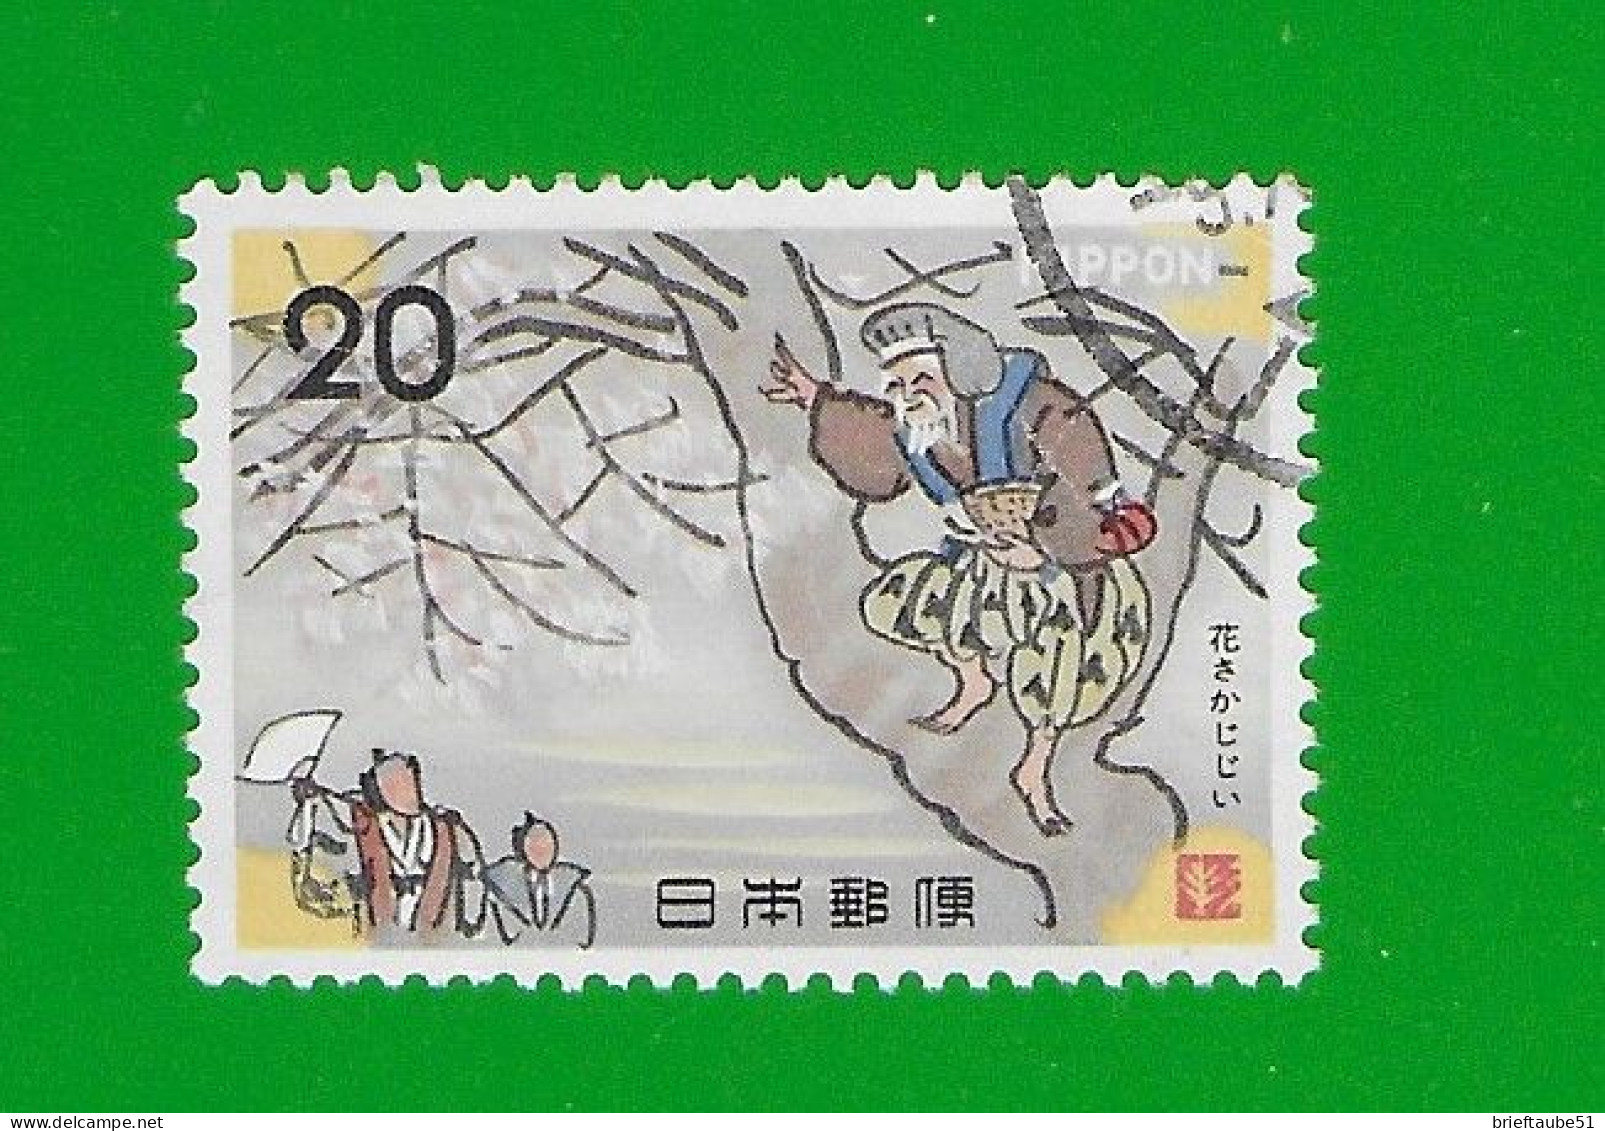 JAPAN 1973  Gestempelt°used/Bedarf # Michel-Nr. 1195  #  VOLKSMÄRCHEN #  "Alter Mann Auf Einem Baum" - Oblitérés